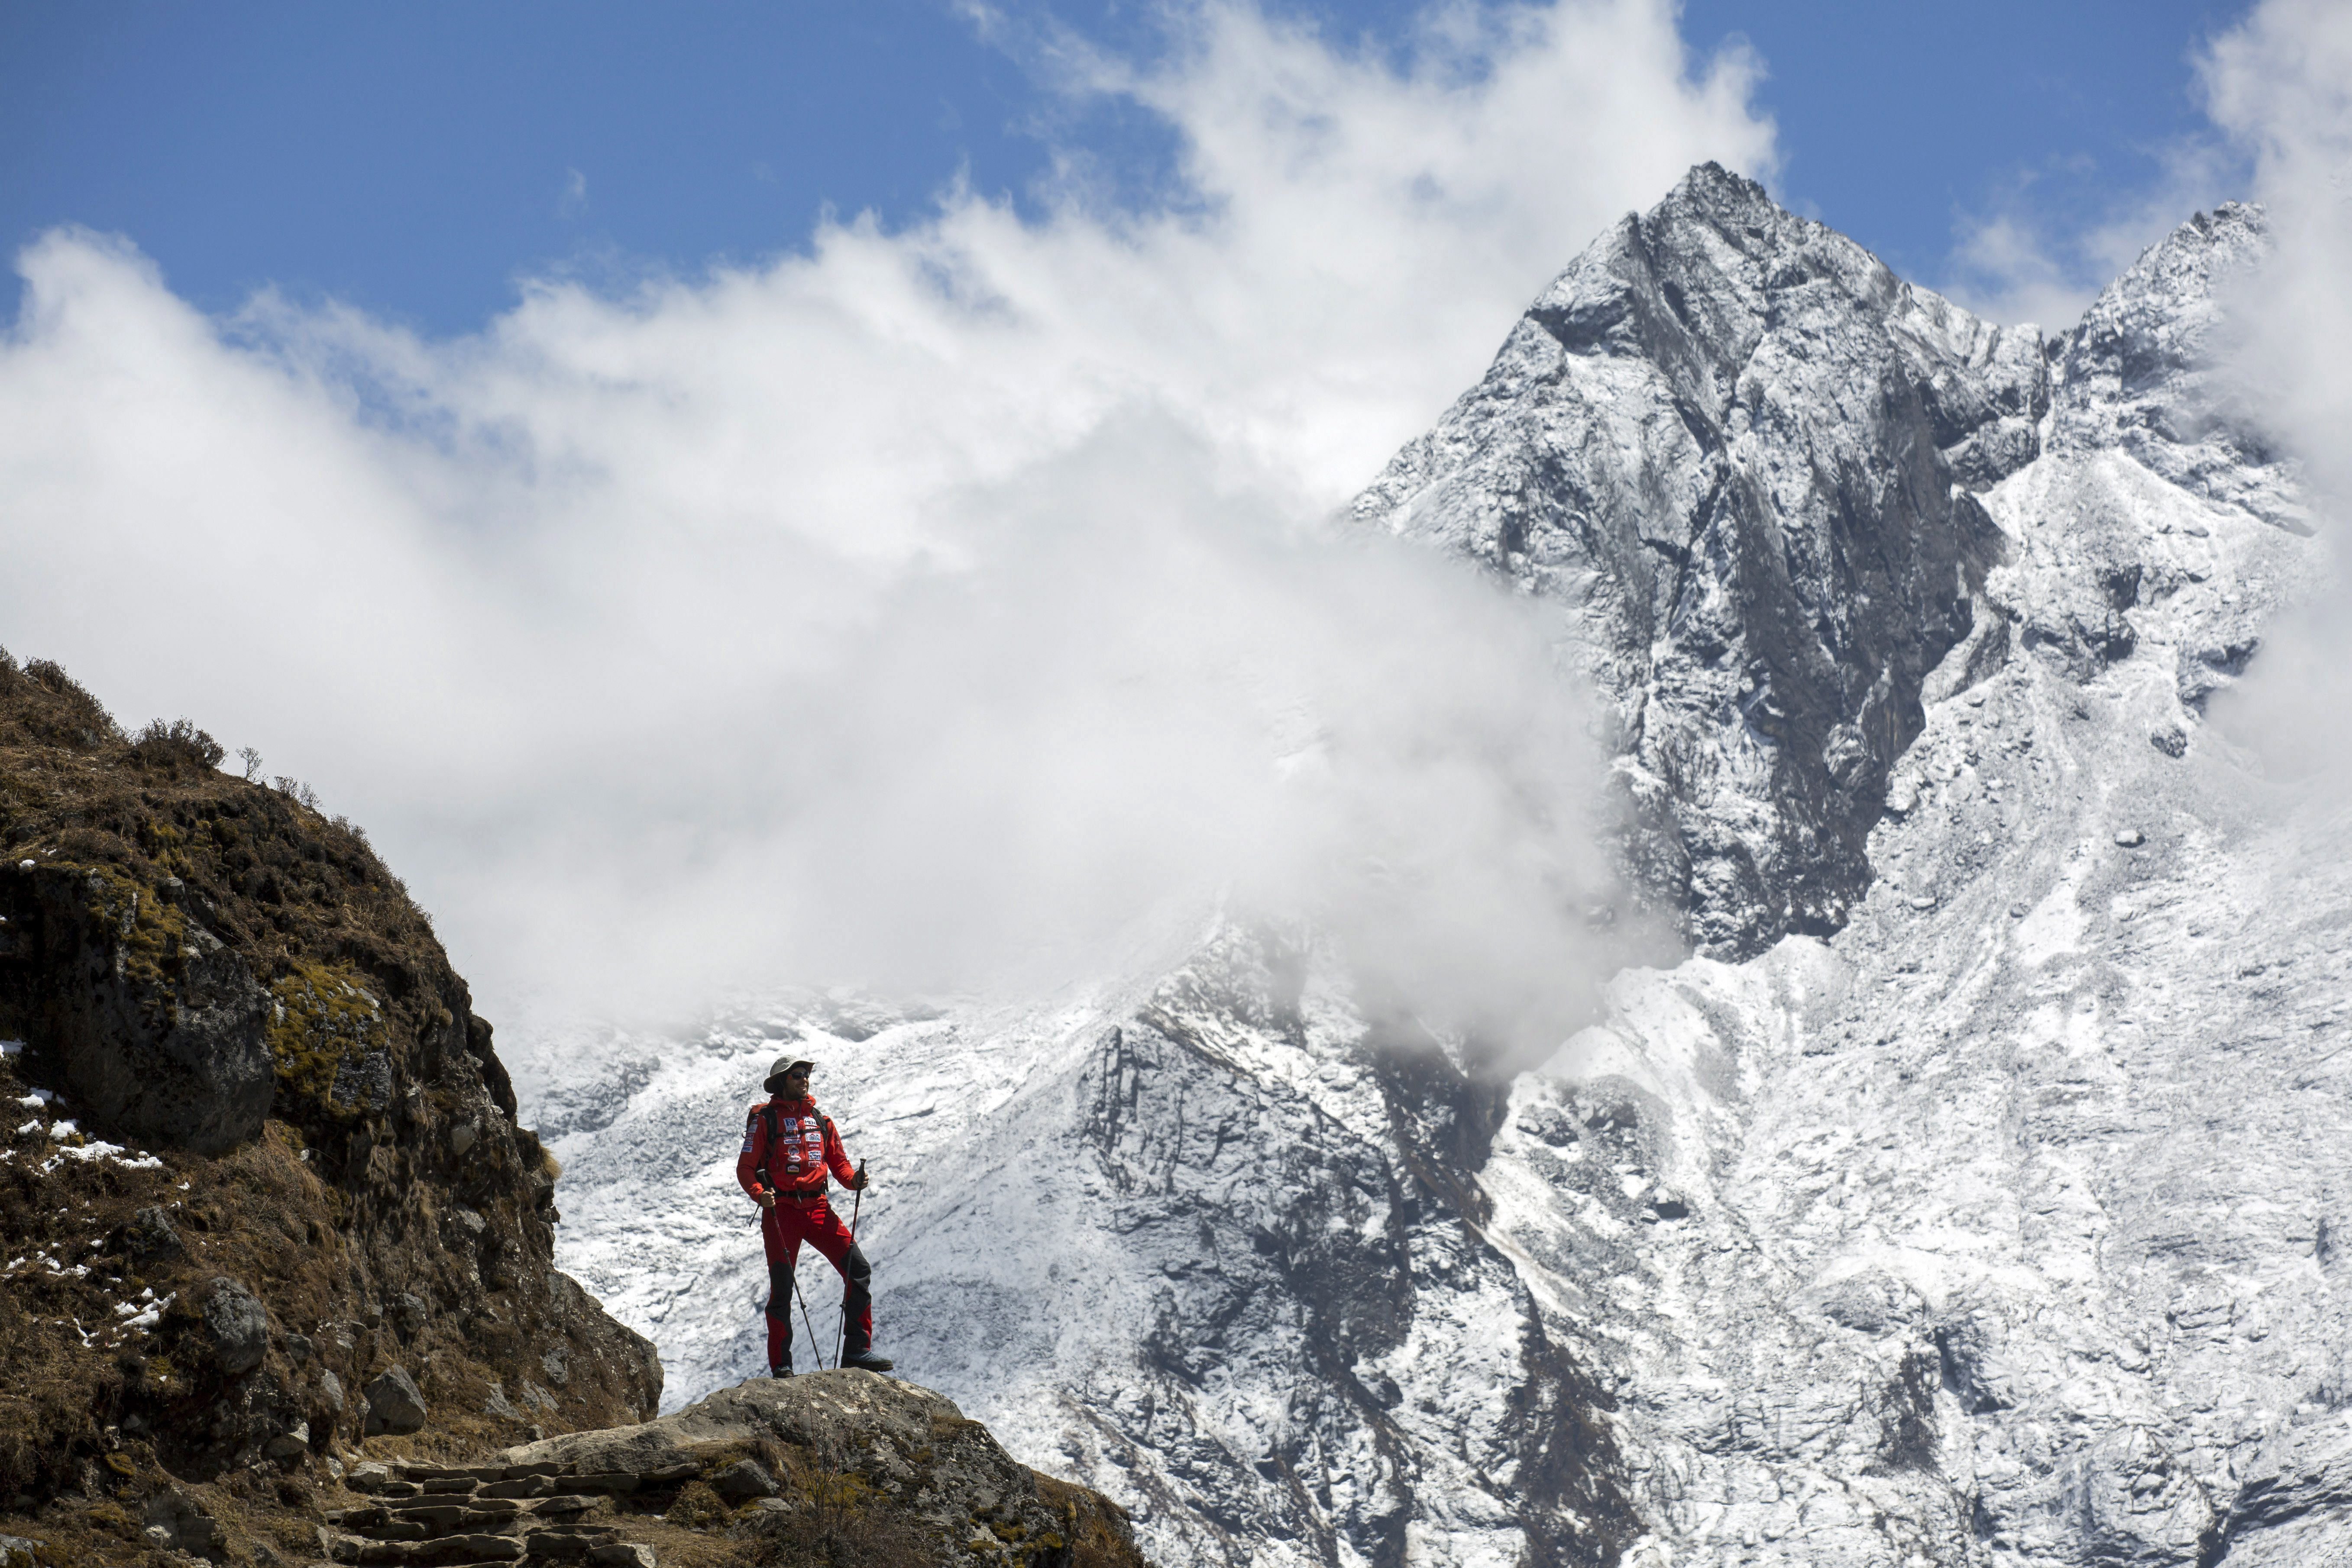 Βγάζουν το μέτρο στο Νεπάλ για να υπολογίσουν το ύψος του Έβερεστ